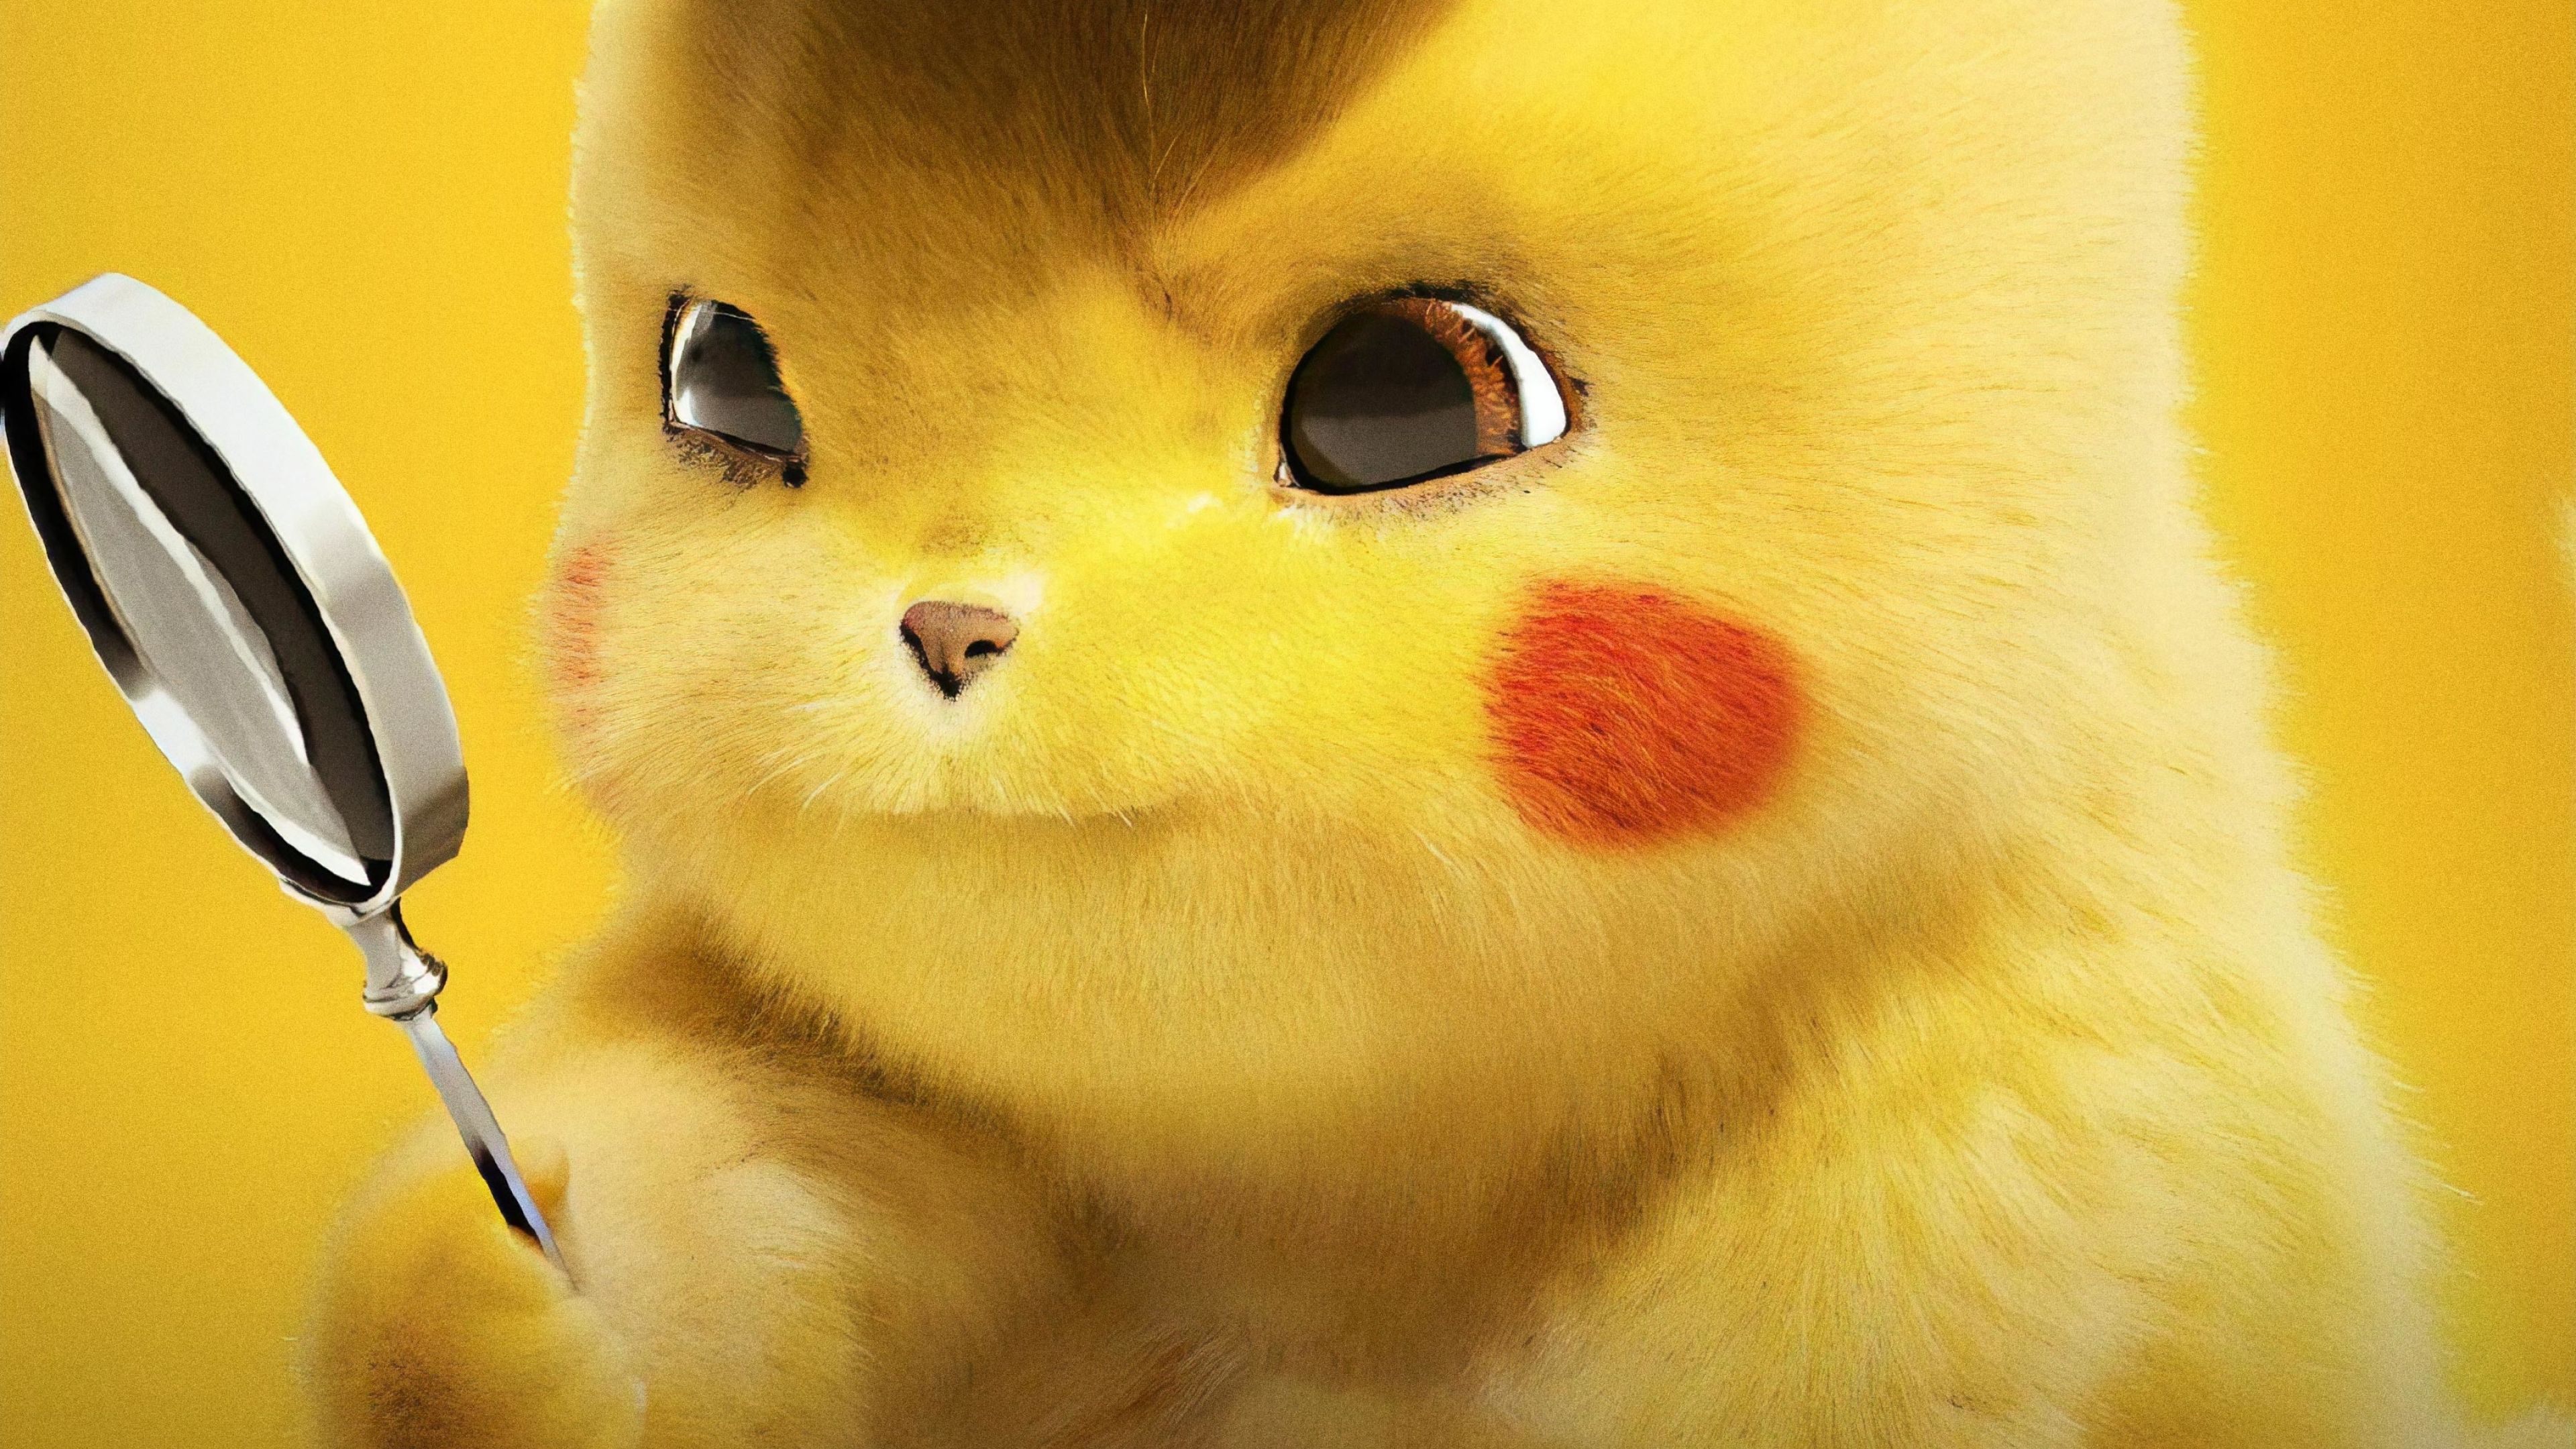 Pikachu 4k sẽ khiến bạn ngạc nhiên với độ nét cao chưa từng thấy. Nơi mà màu sắc và chi tiết đáng kinh ngạc. Bức ảnh này sẽ khiến bạn cảm thấy như đang sống trong thế giới thực của Pokemon!